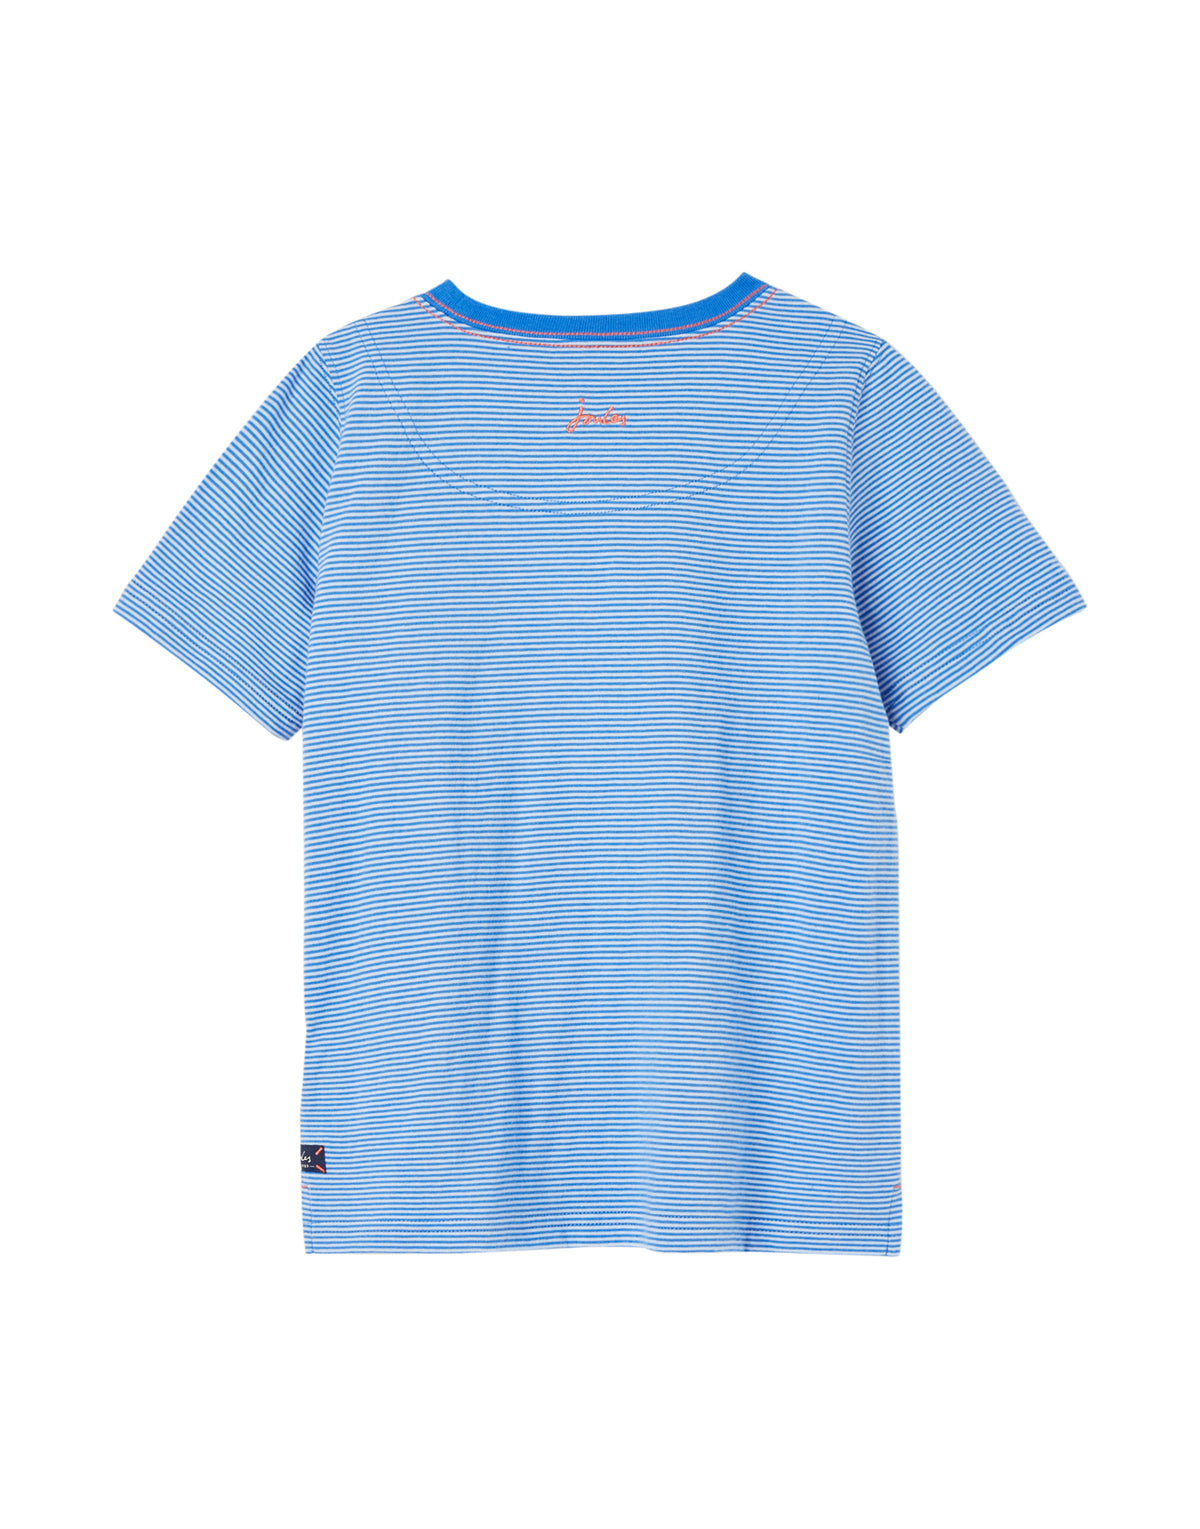 Jungen T-Shirt Island Blue Stripe 217000